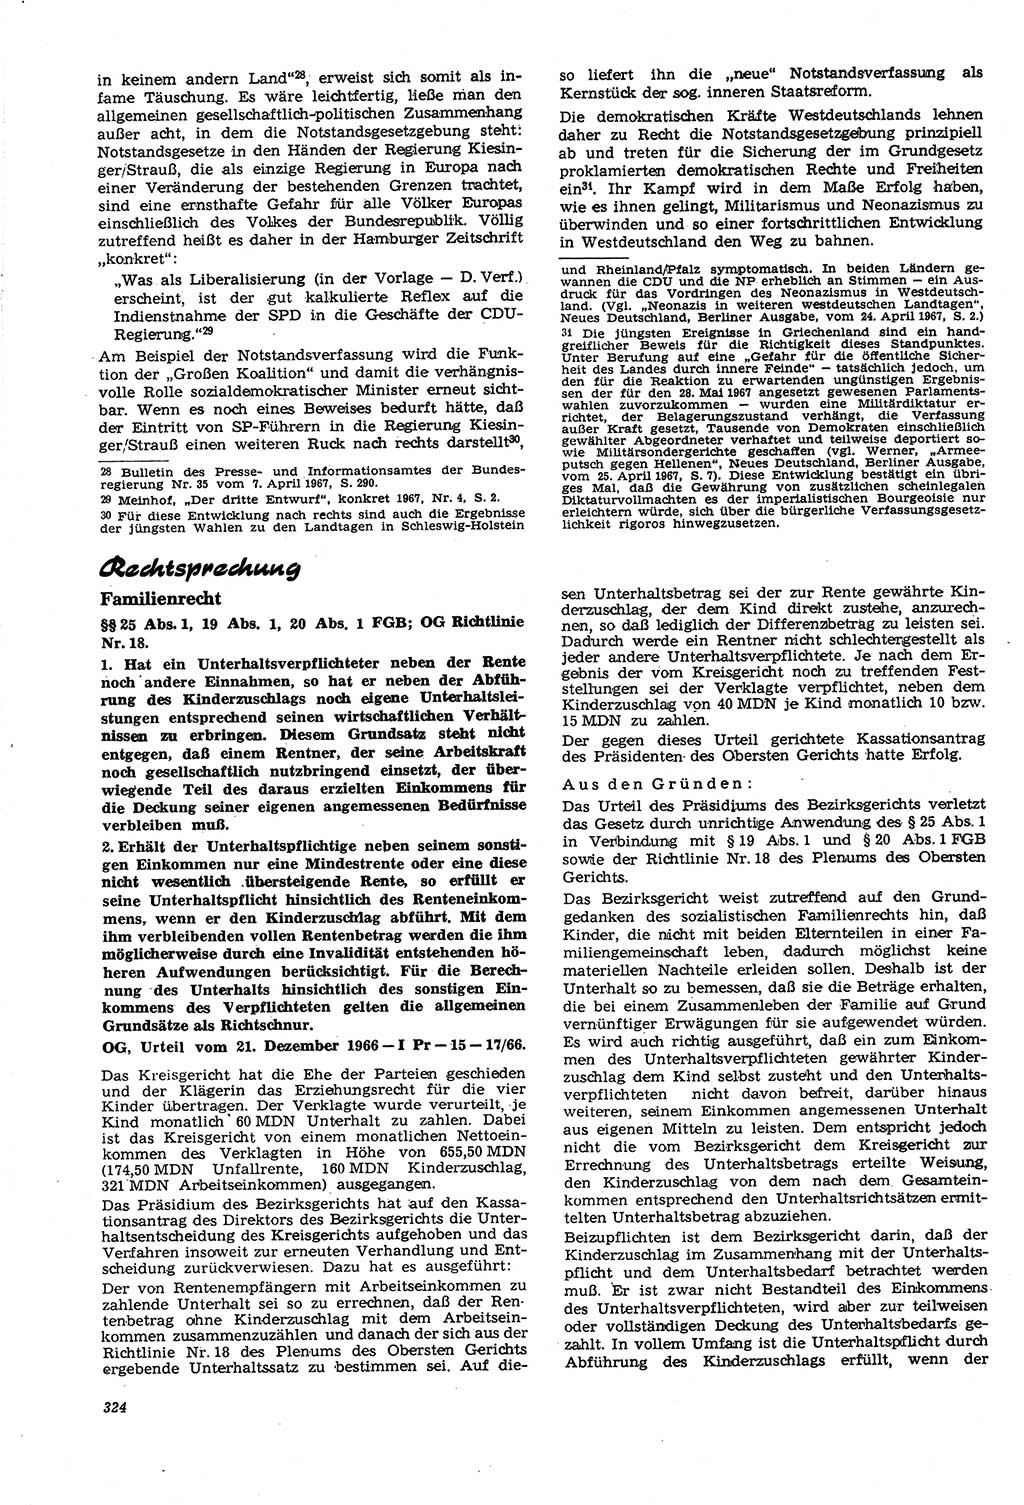 Neue Justiz (NJ), Zeitschrift für Recht und Rechtswissenschaft [Deutsche Demokratische Republik (DDR)], 21. Jahrgang 1967, Seite 324 (NJ DDR 1967, S. 324)